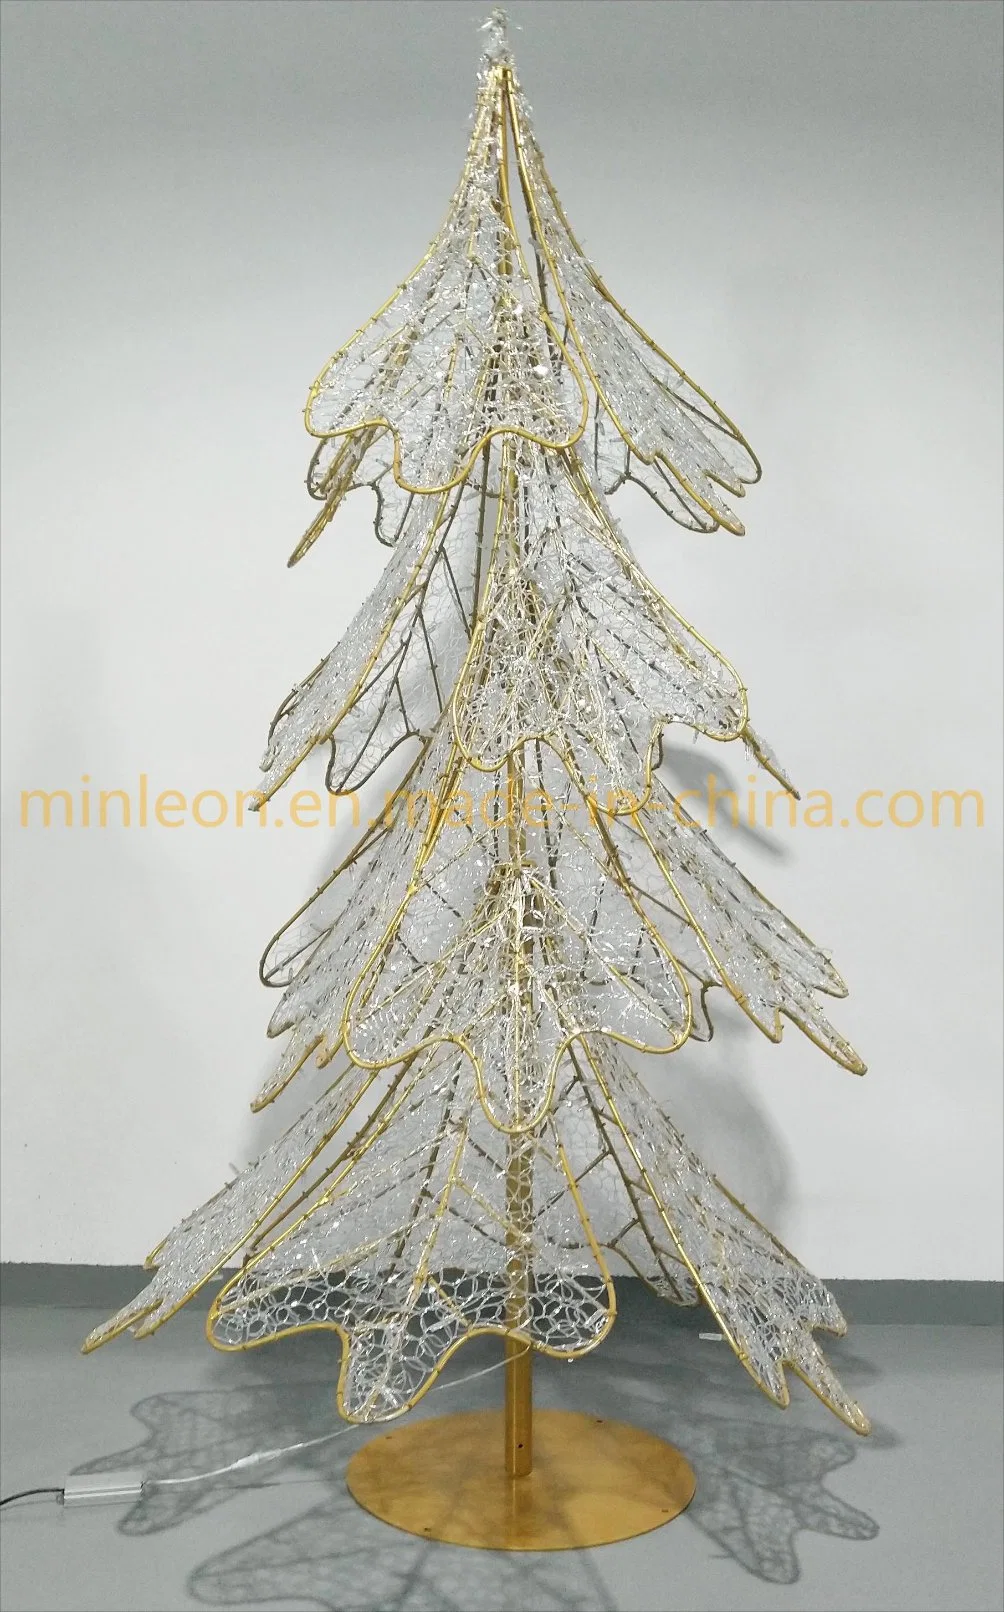 عرض ثلاثي الأبعاد 1.8 م/2.5 م شجرة الصنوبر شجرة عيد الميلاد زخرفة شارع عيد الميلاد رمز الشاشة